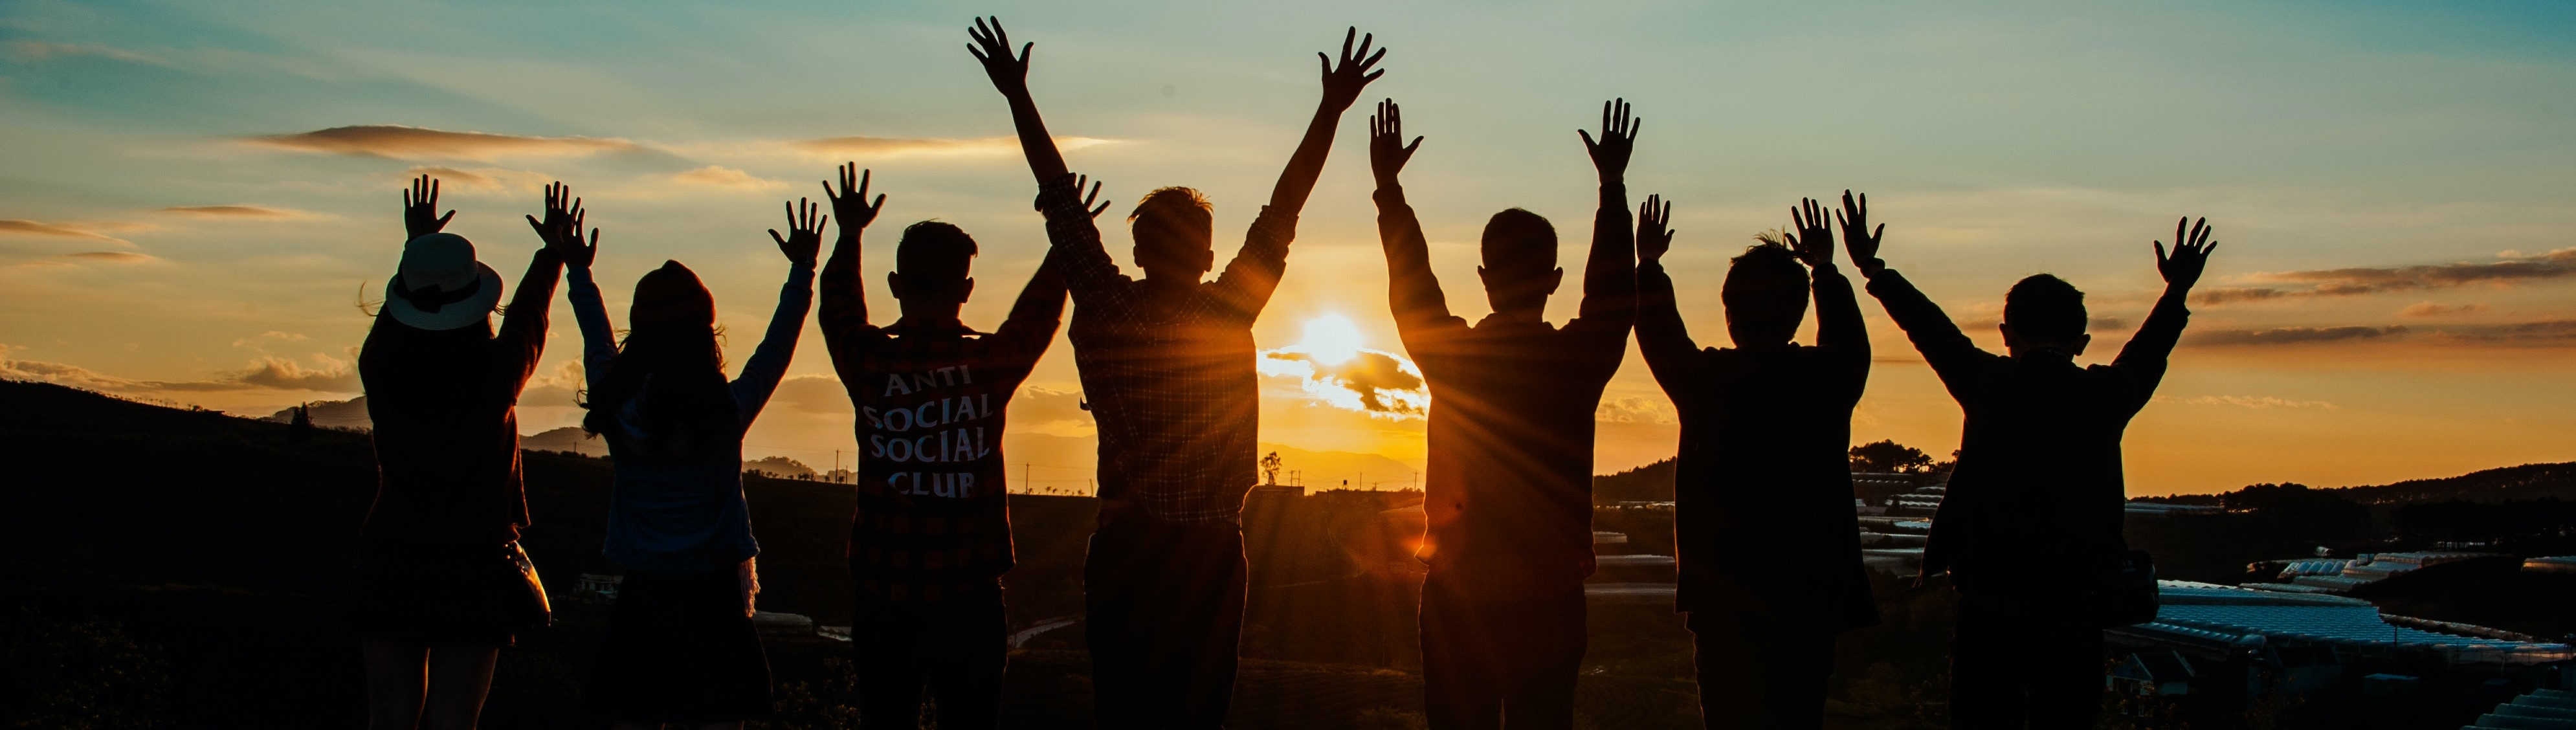 Grupopo di giovani a braccia alzate sullo sfondo di un tramonto